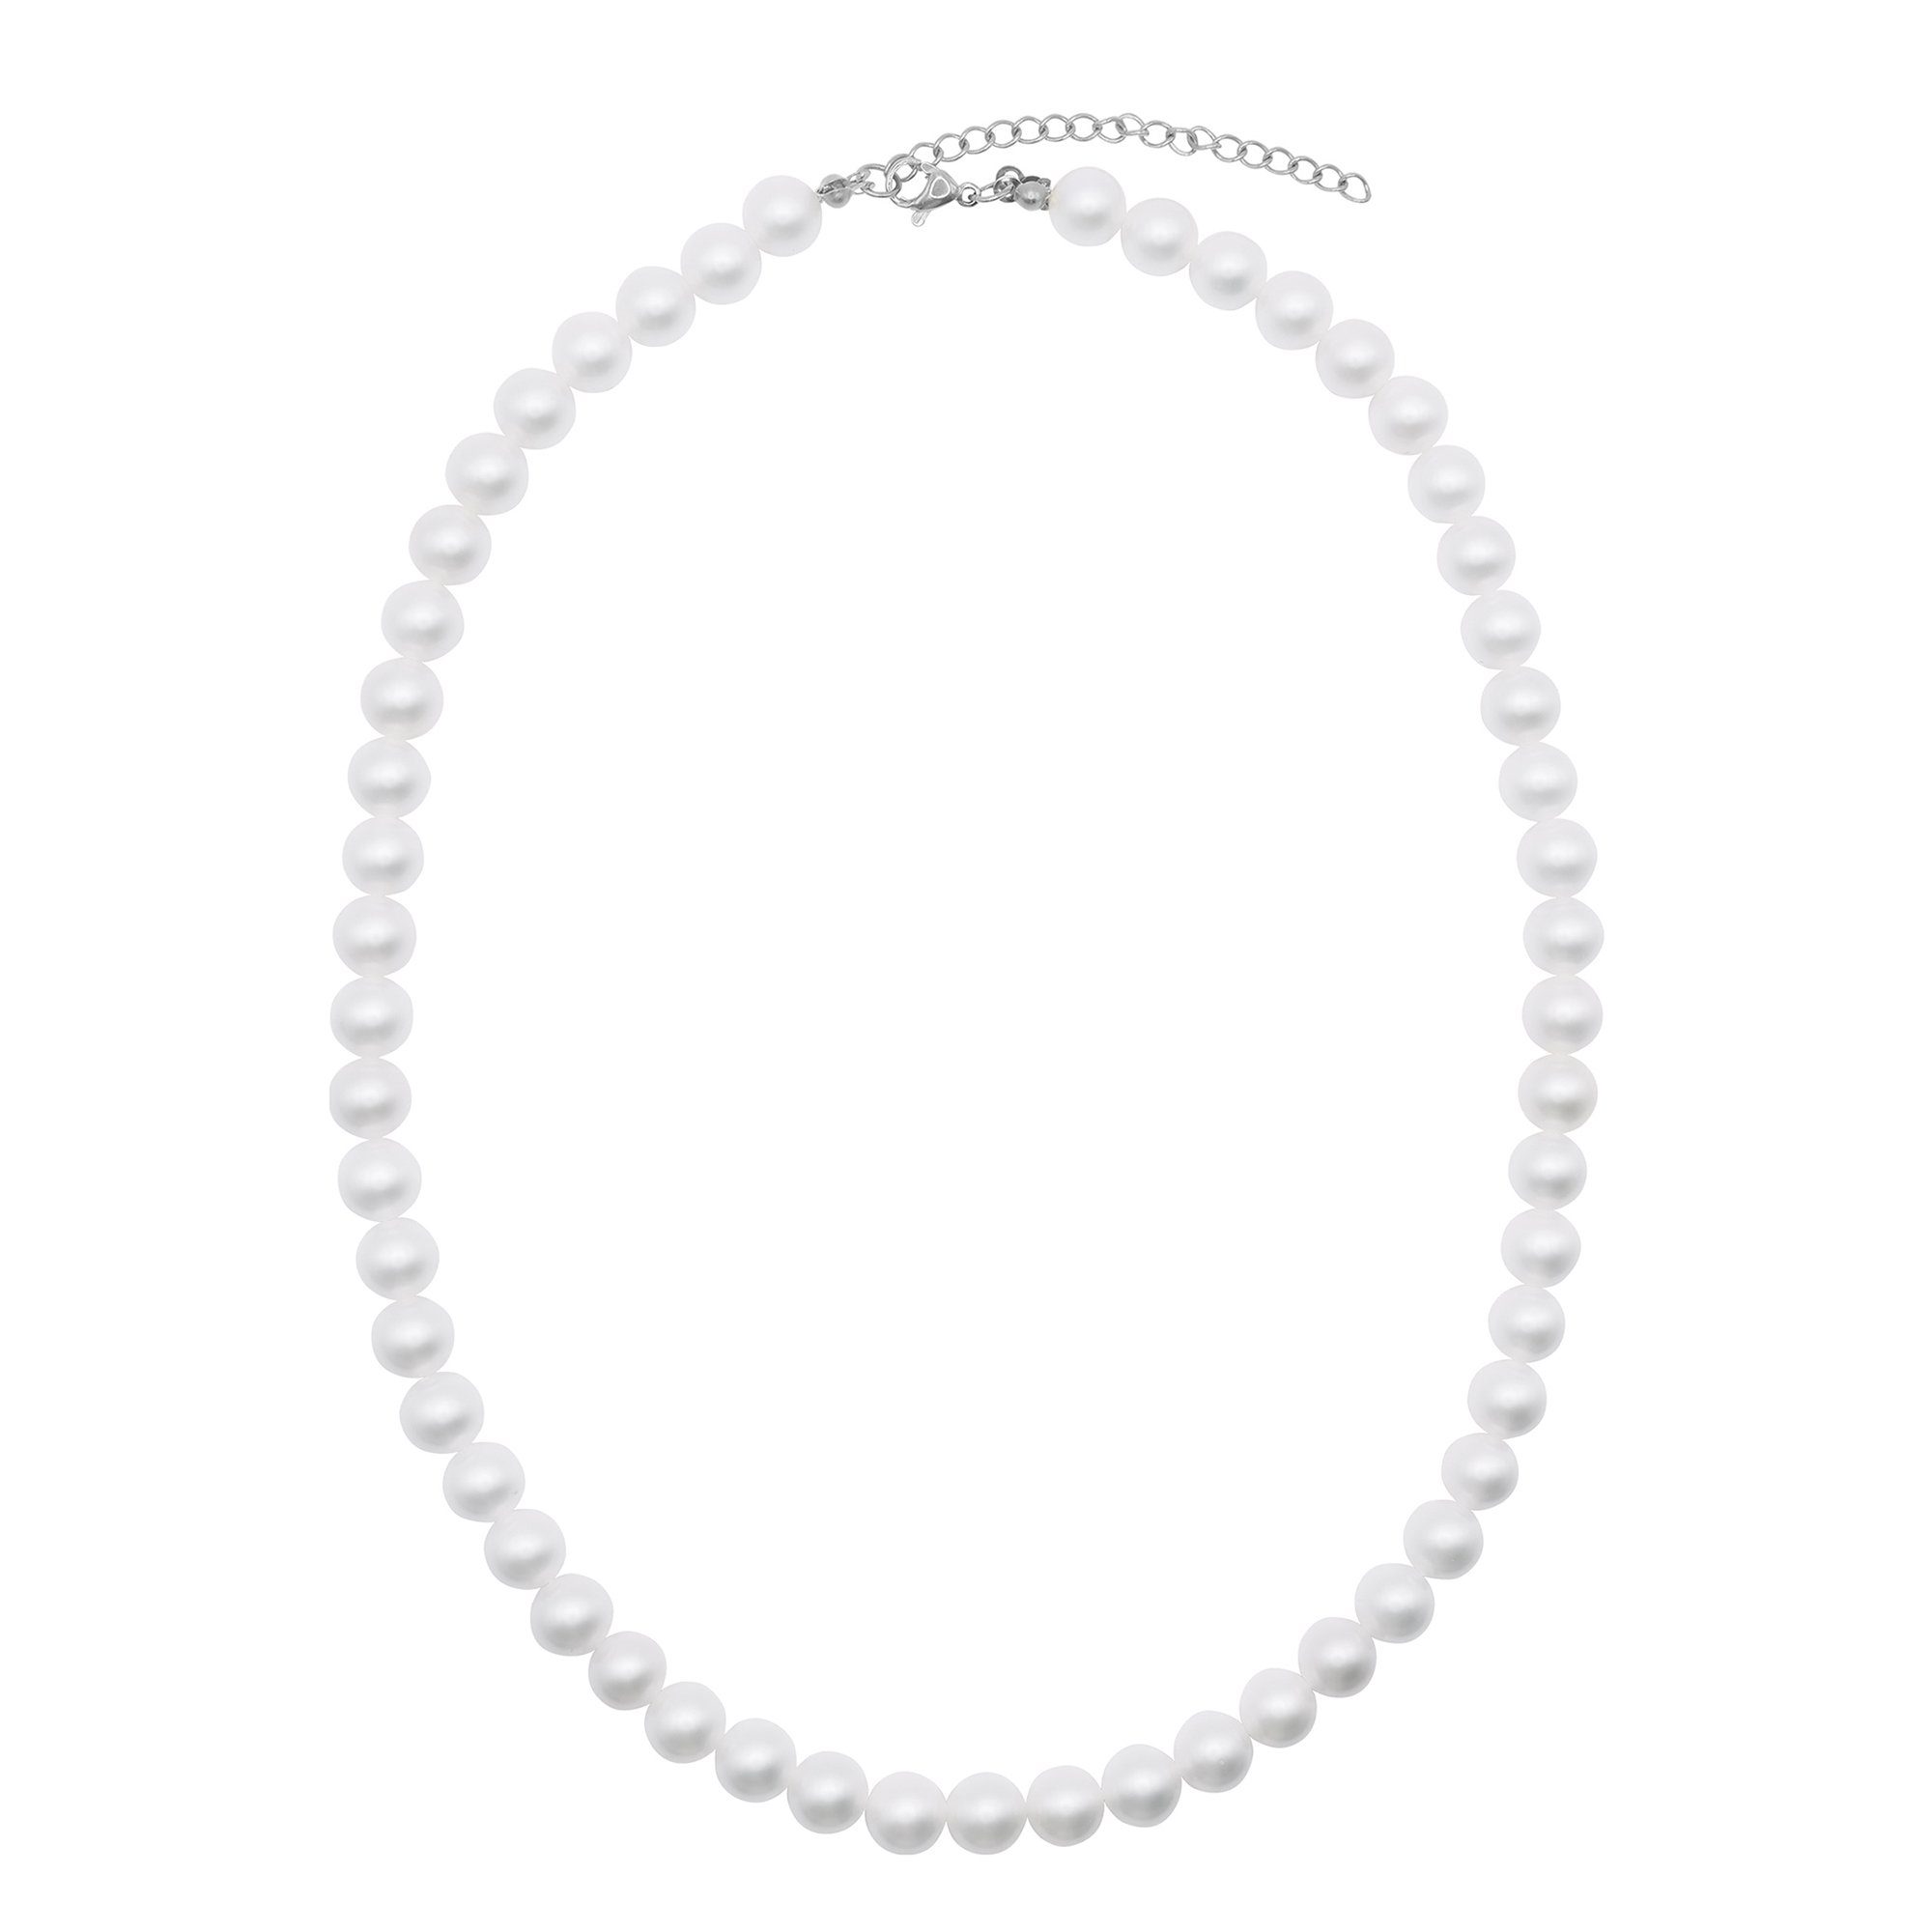 Heideman Collier Perlenkette No. oder Collier 8 silberfarben mit weiß Perlen glanzmatt (inkl. Geschenkverpackung), farbig poliert silberfarben